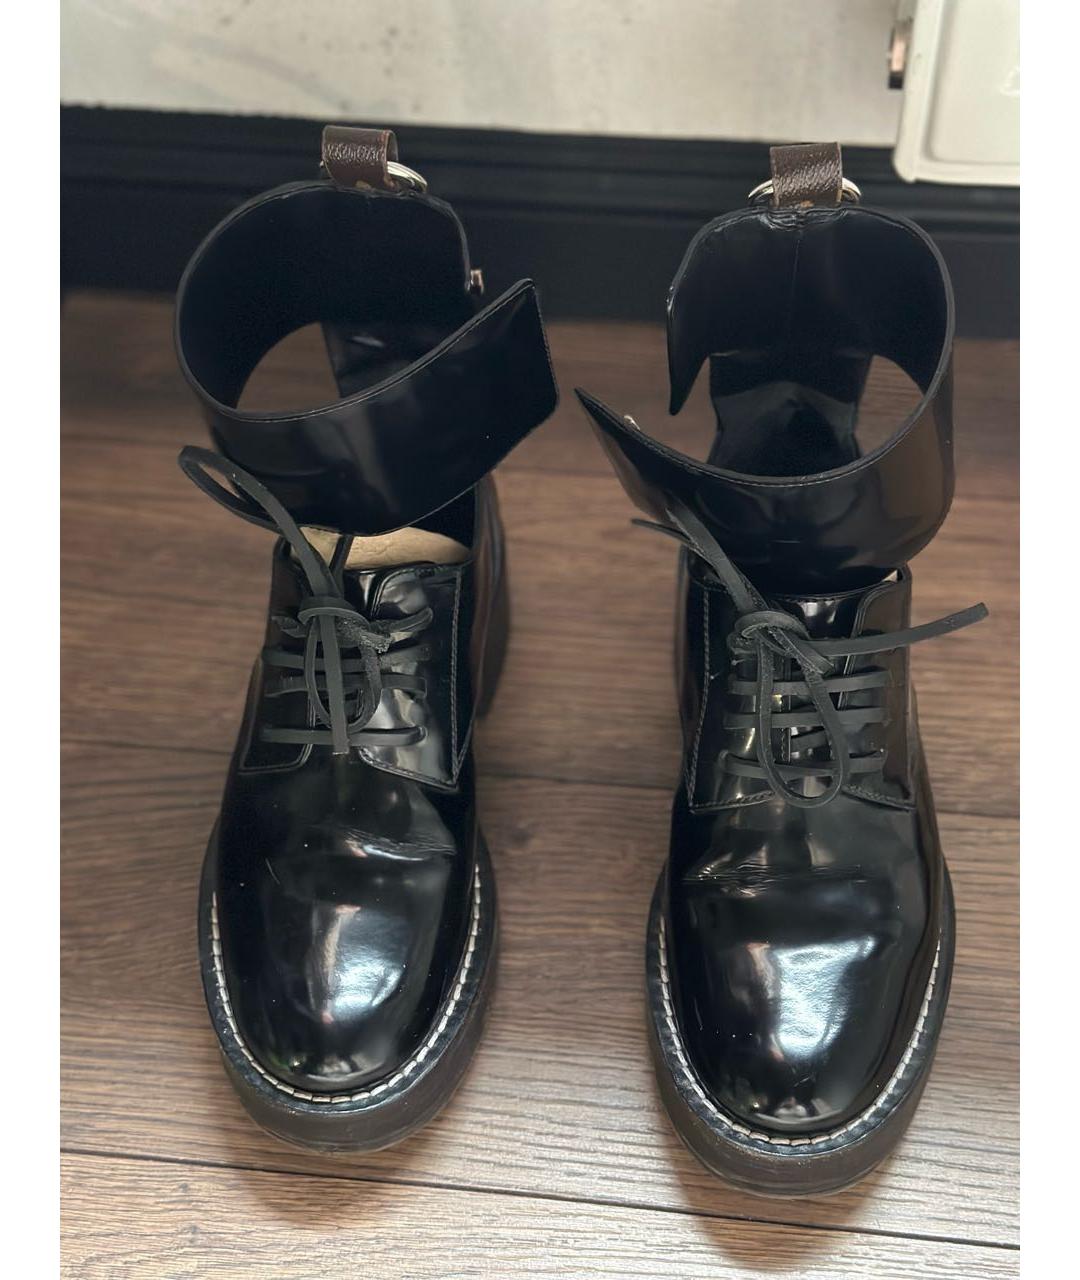 LOUIS VUITTON PRE-OWNED Черные ботинки из лакированной кожи, фото 2